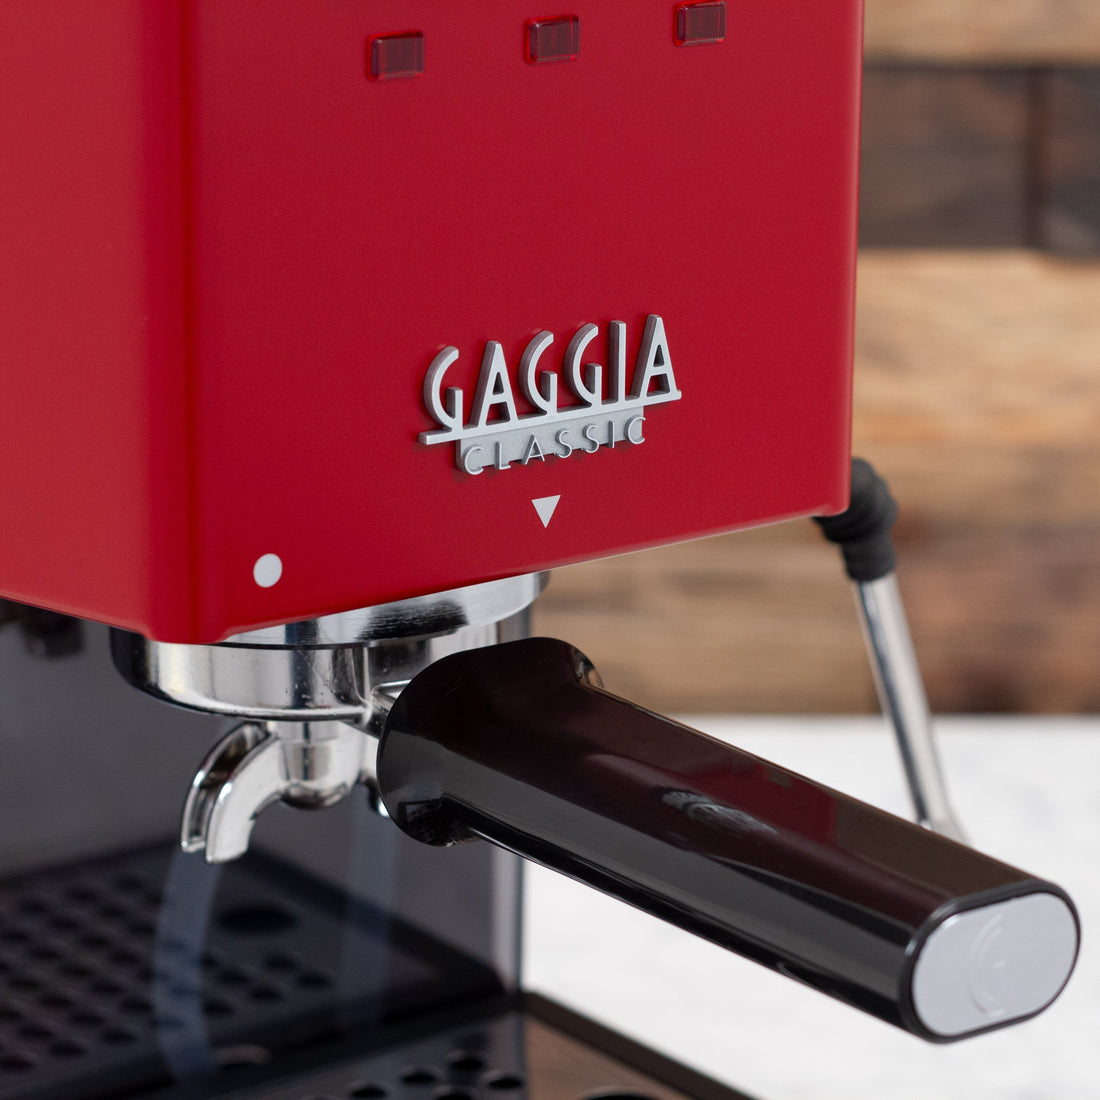 Gaggia Classic Evo Pro Espresso Machine in Cherry Red